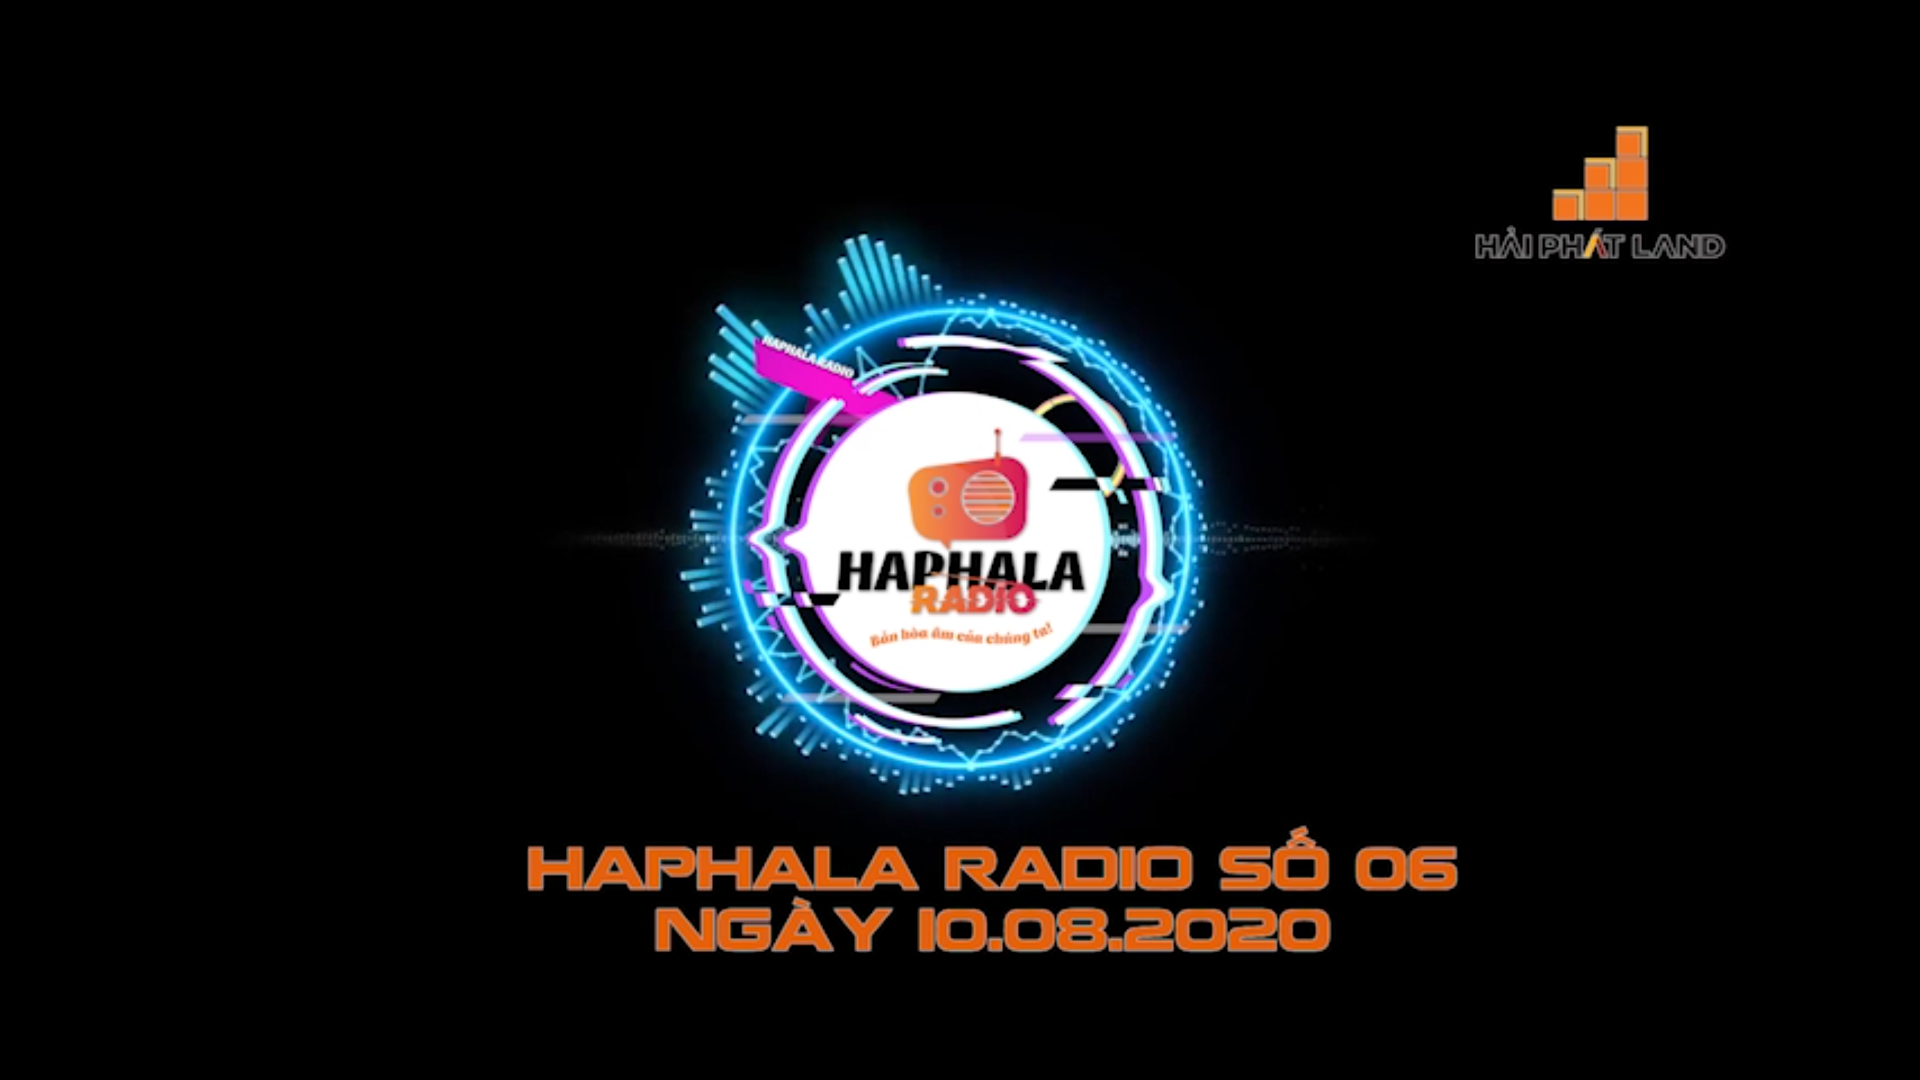 Haphala Radio số 06 | Ngày 10.08.2020